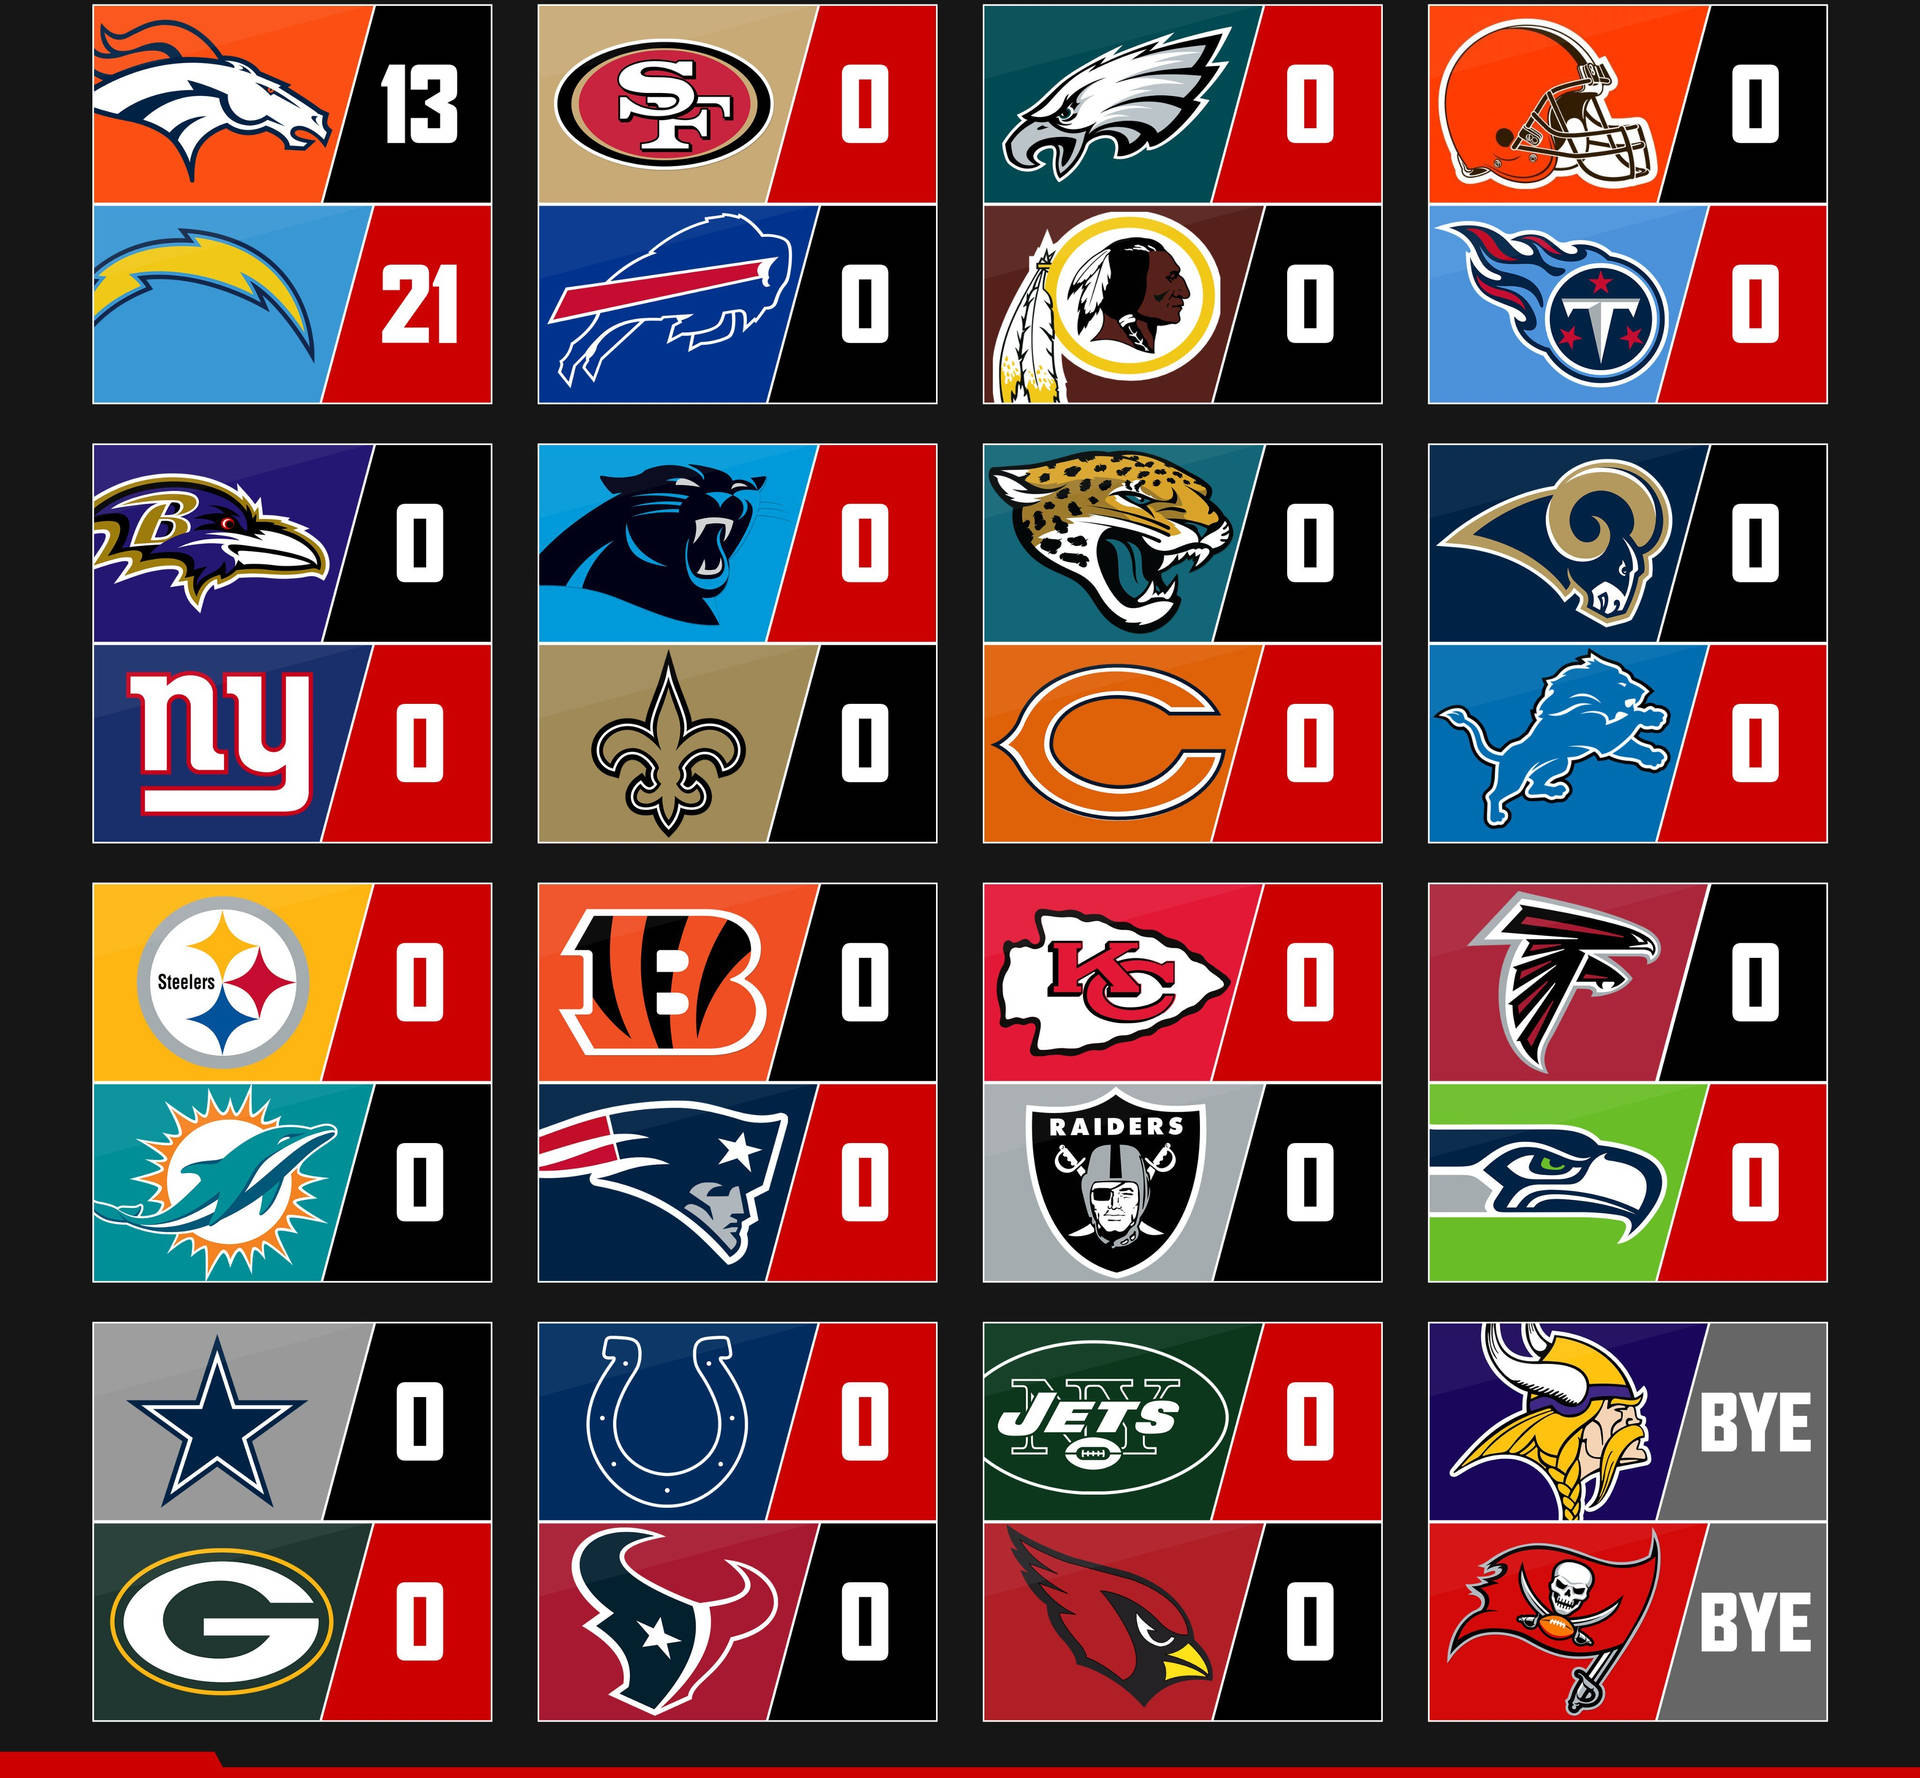 NFLS Scores Of Football Teams Wallpaper